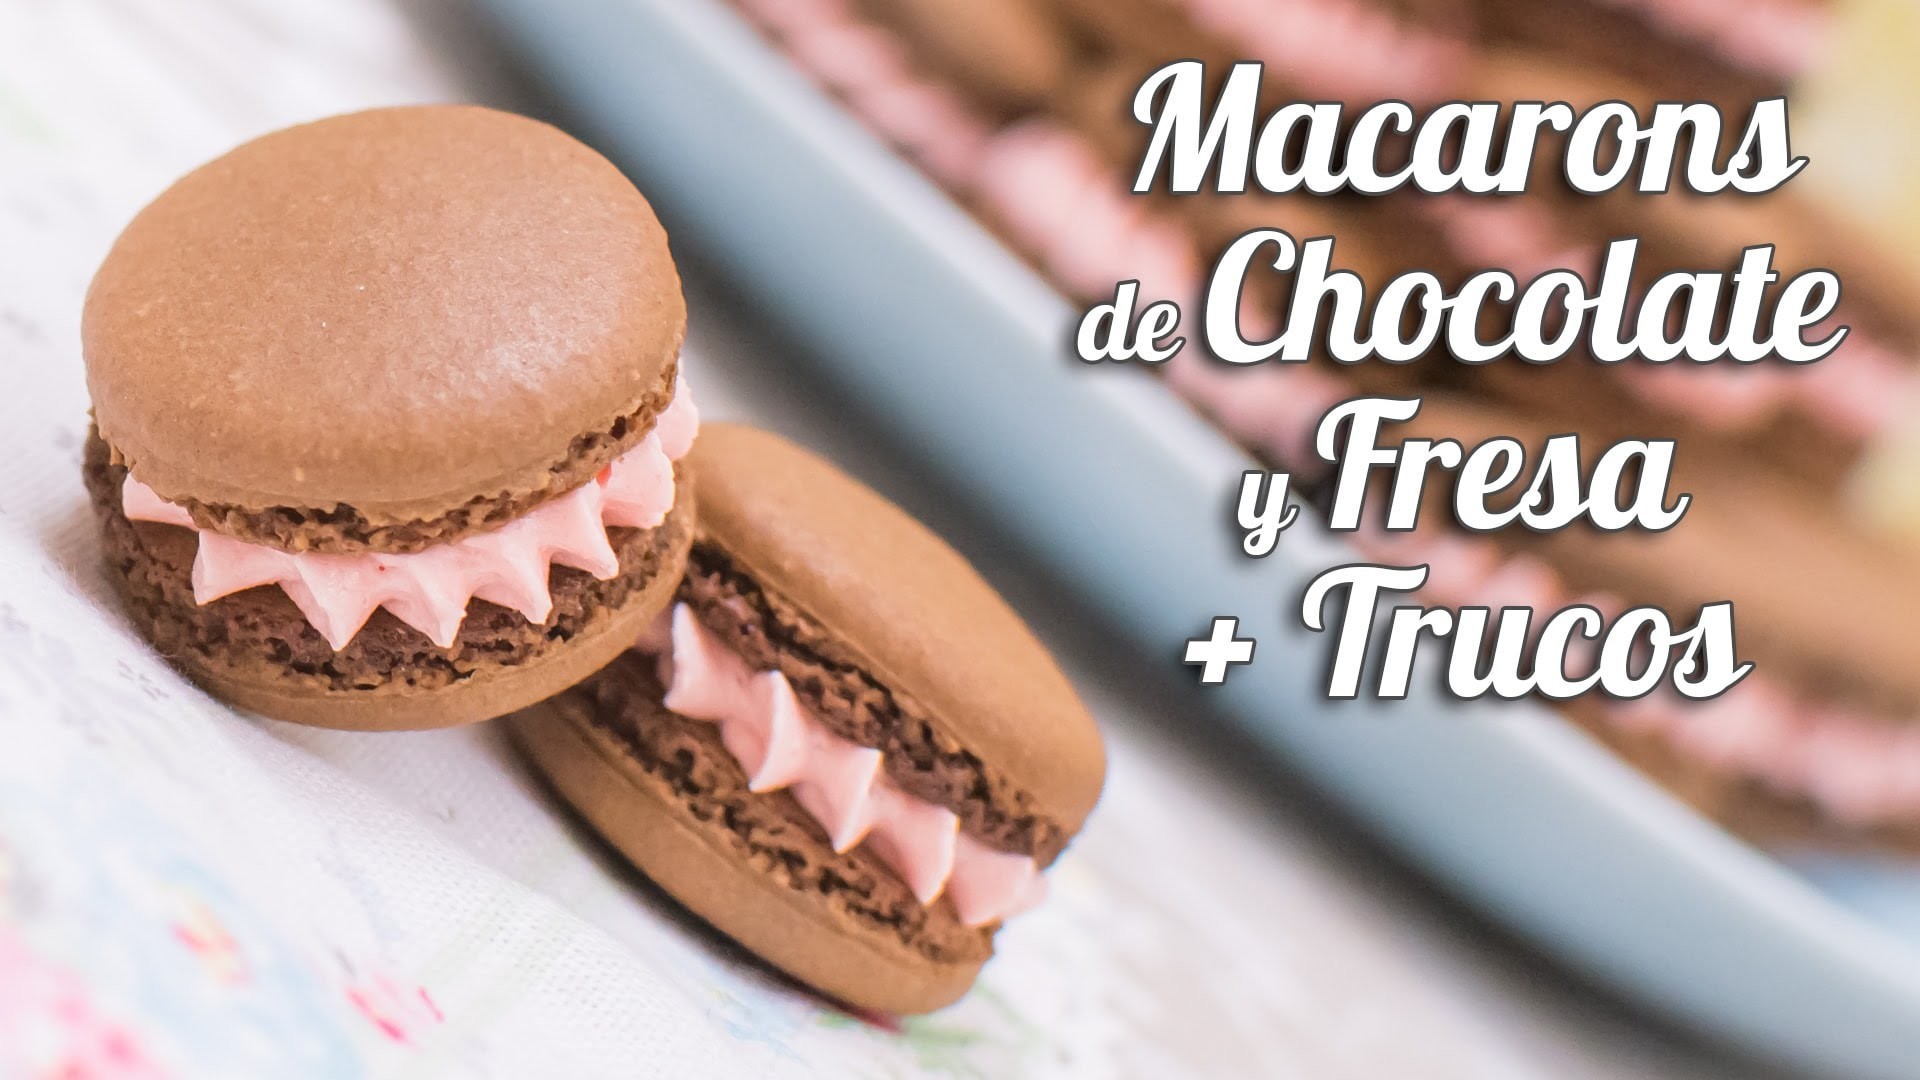 Macarons de chocolate y fresa + Trucos para macarons perfectos | Quiero Cupcakes!